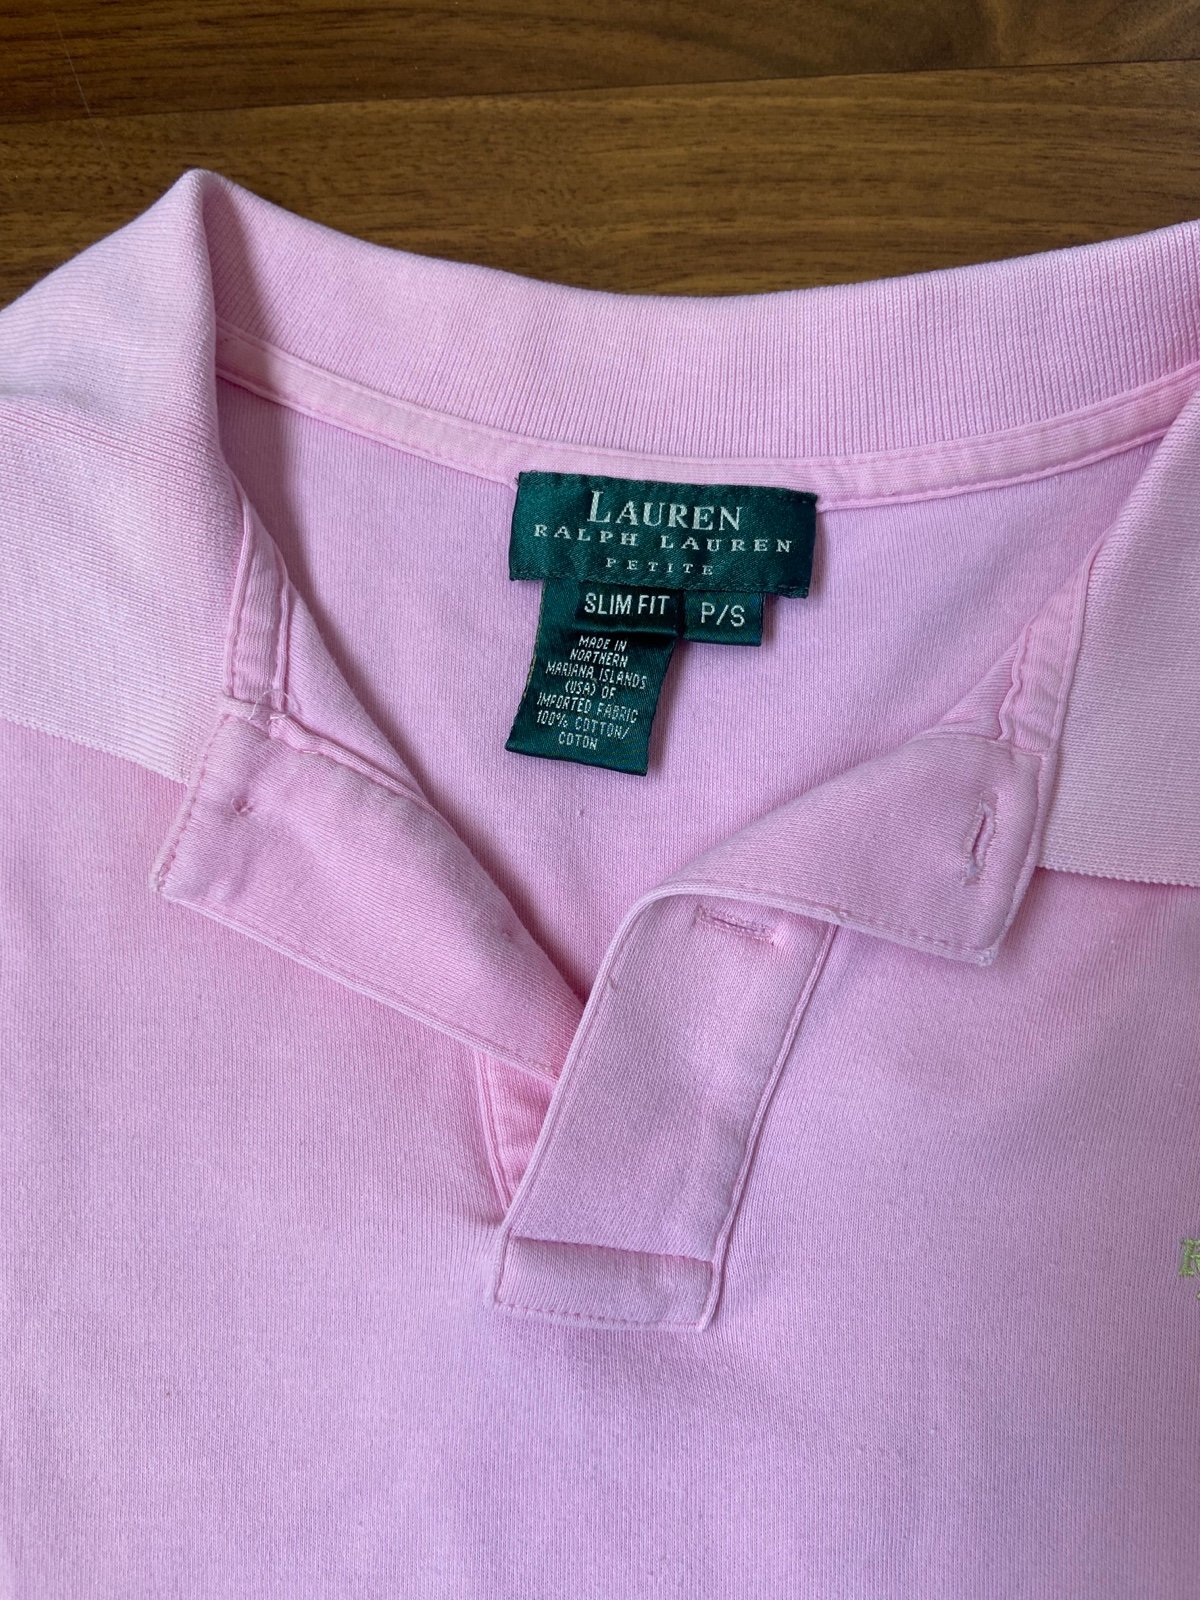 Comfortable Polo Ralph Lauren short sleeve shirts for women LU4KPeCmu Store Online